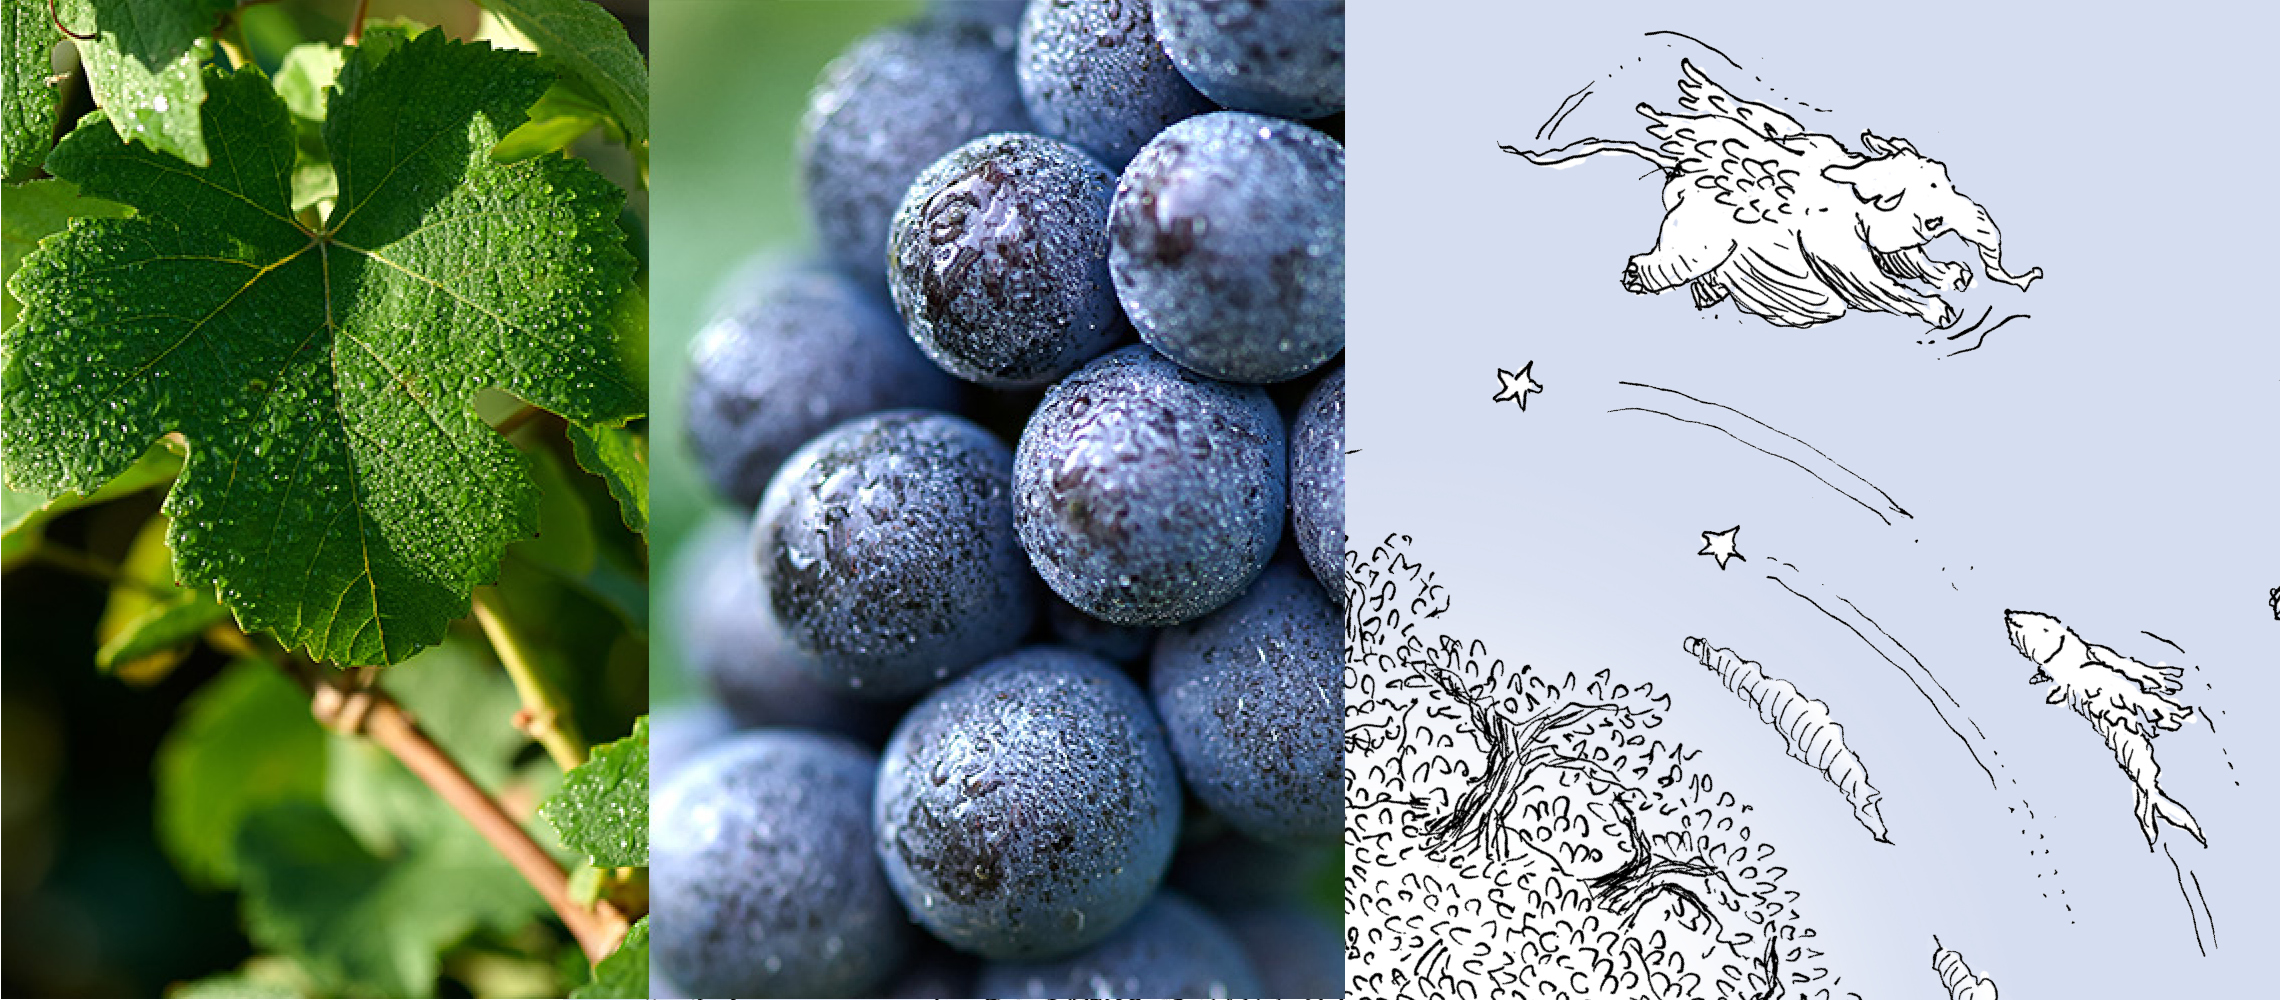 bannière de 3 images : feuille de vigne, baie de raisoin du cépage Meunier et dessin de l'étiquette cuvée Terre d'Irizée